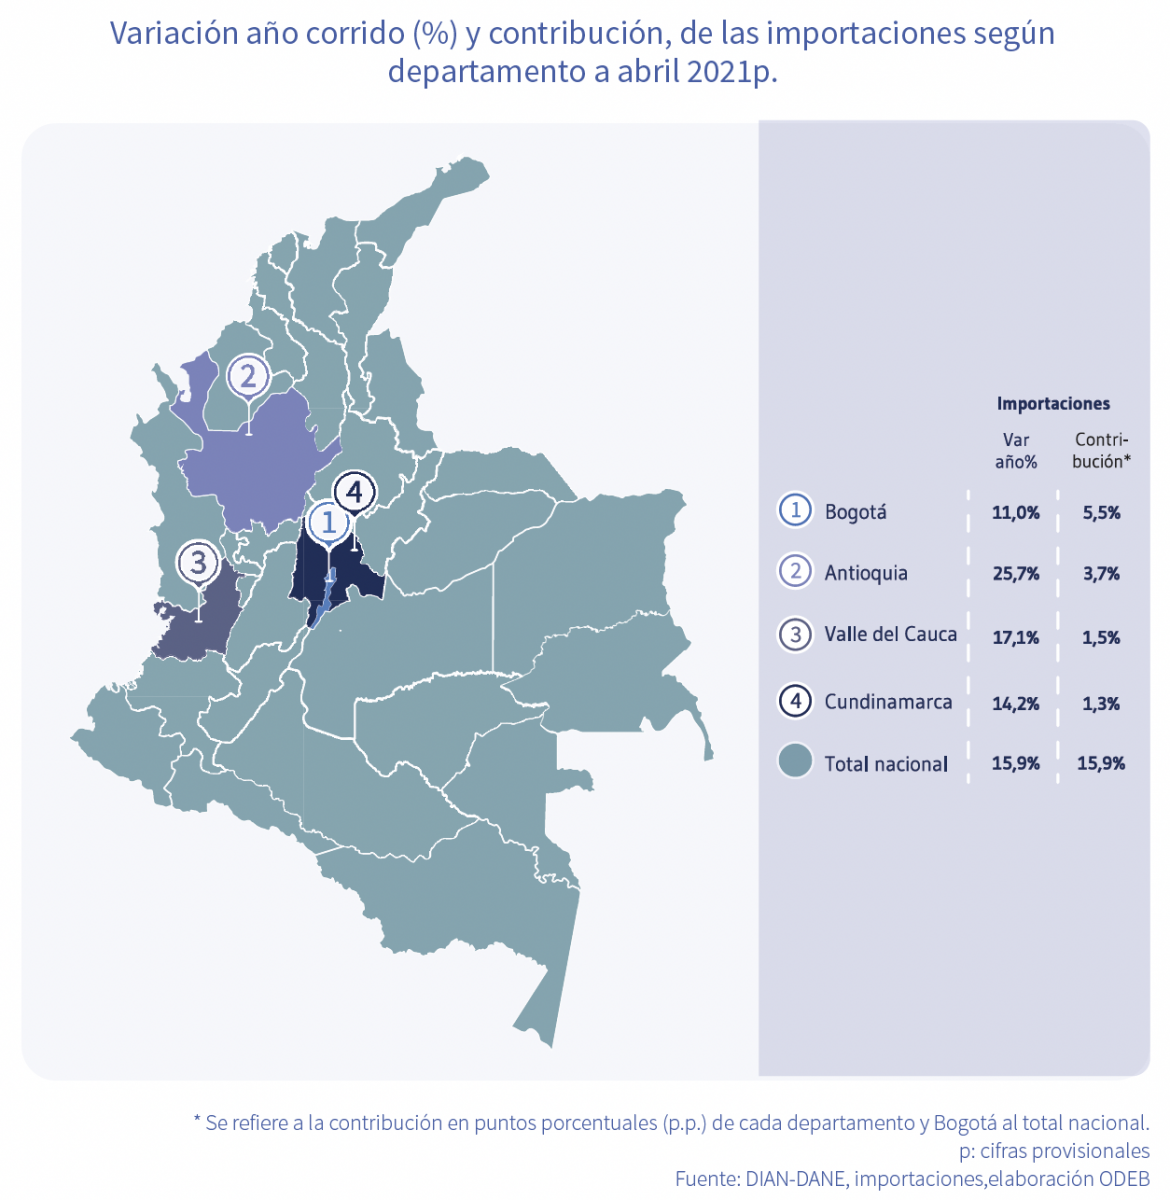 Las importaciones de Bogotá están en camino de recuperación: aumentaron 11,0 % año corrido a abril 2021 